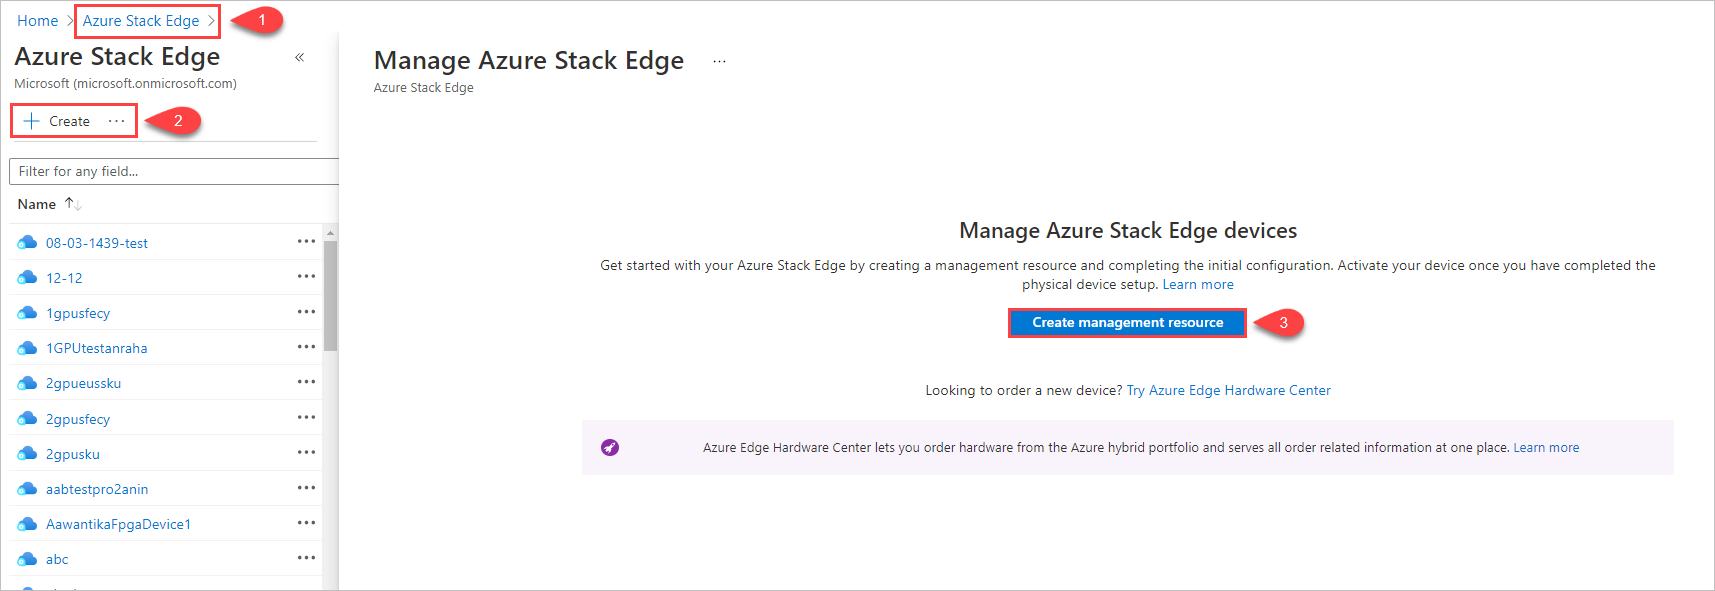 Az Azure Stack Edge felügyeleti erőforrás-létrehozásának megkezdésének 3 lépését bemutató ábra.